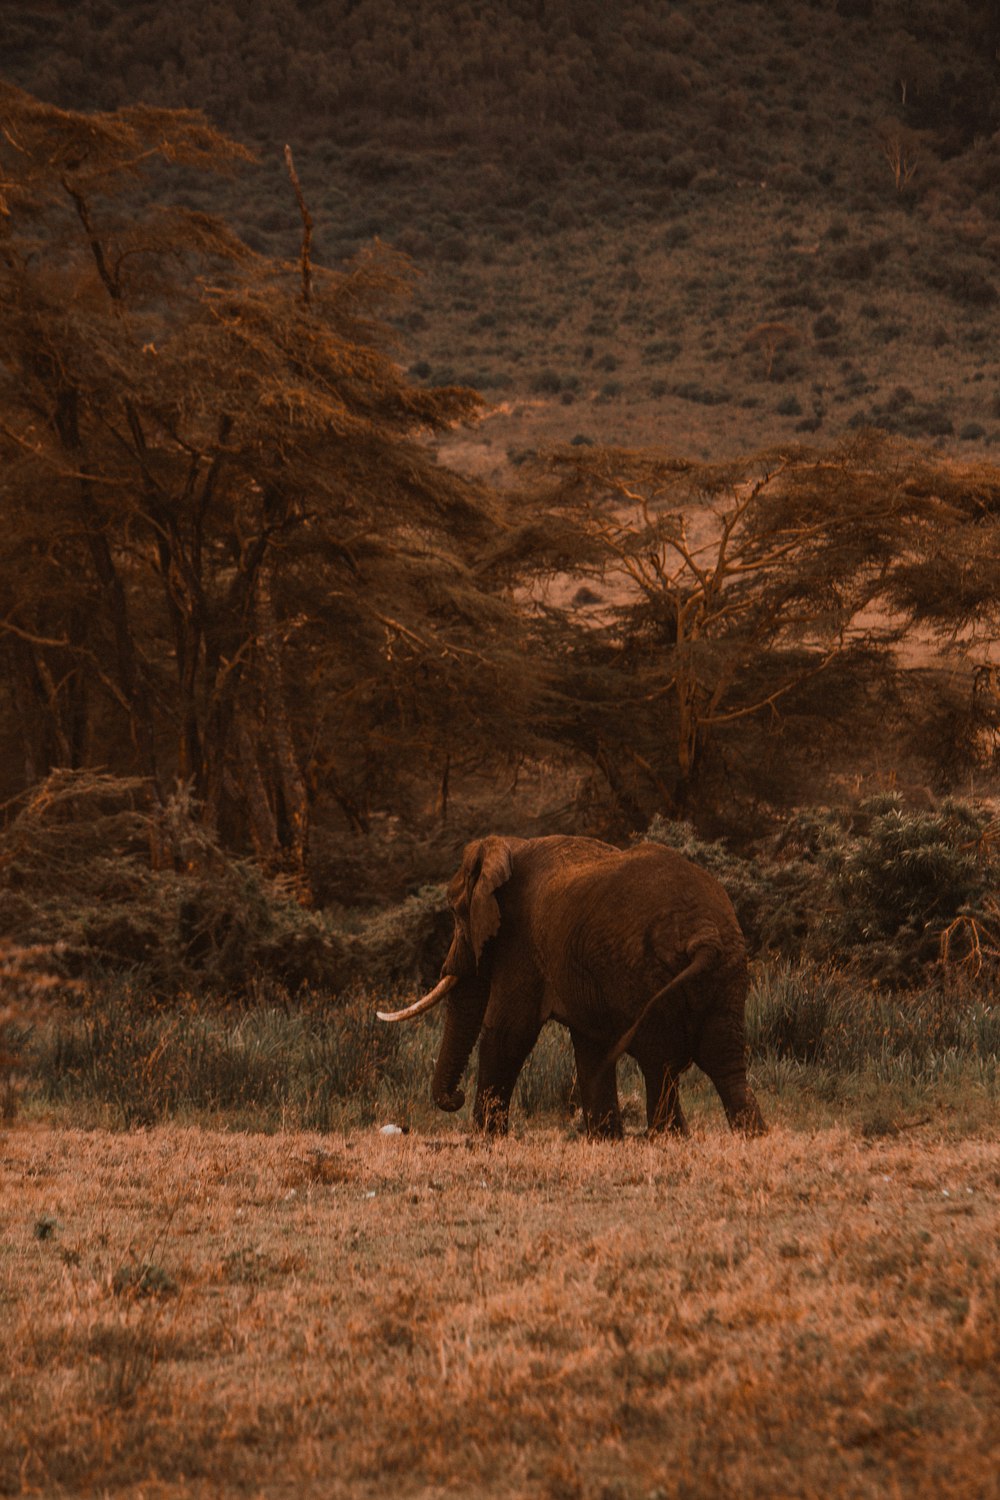 an elephant walking through a dry grass field